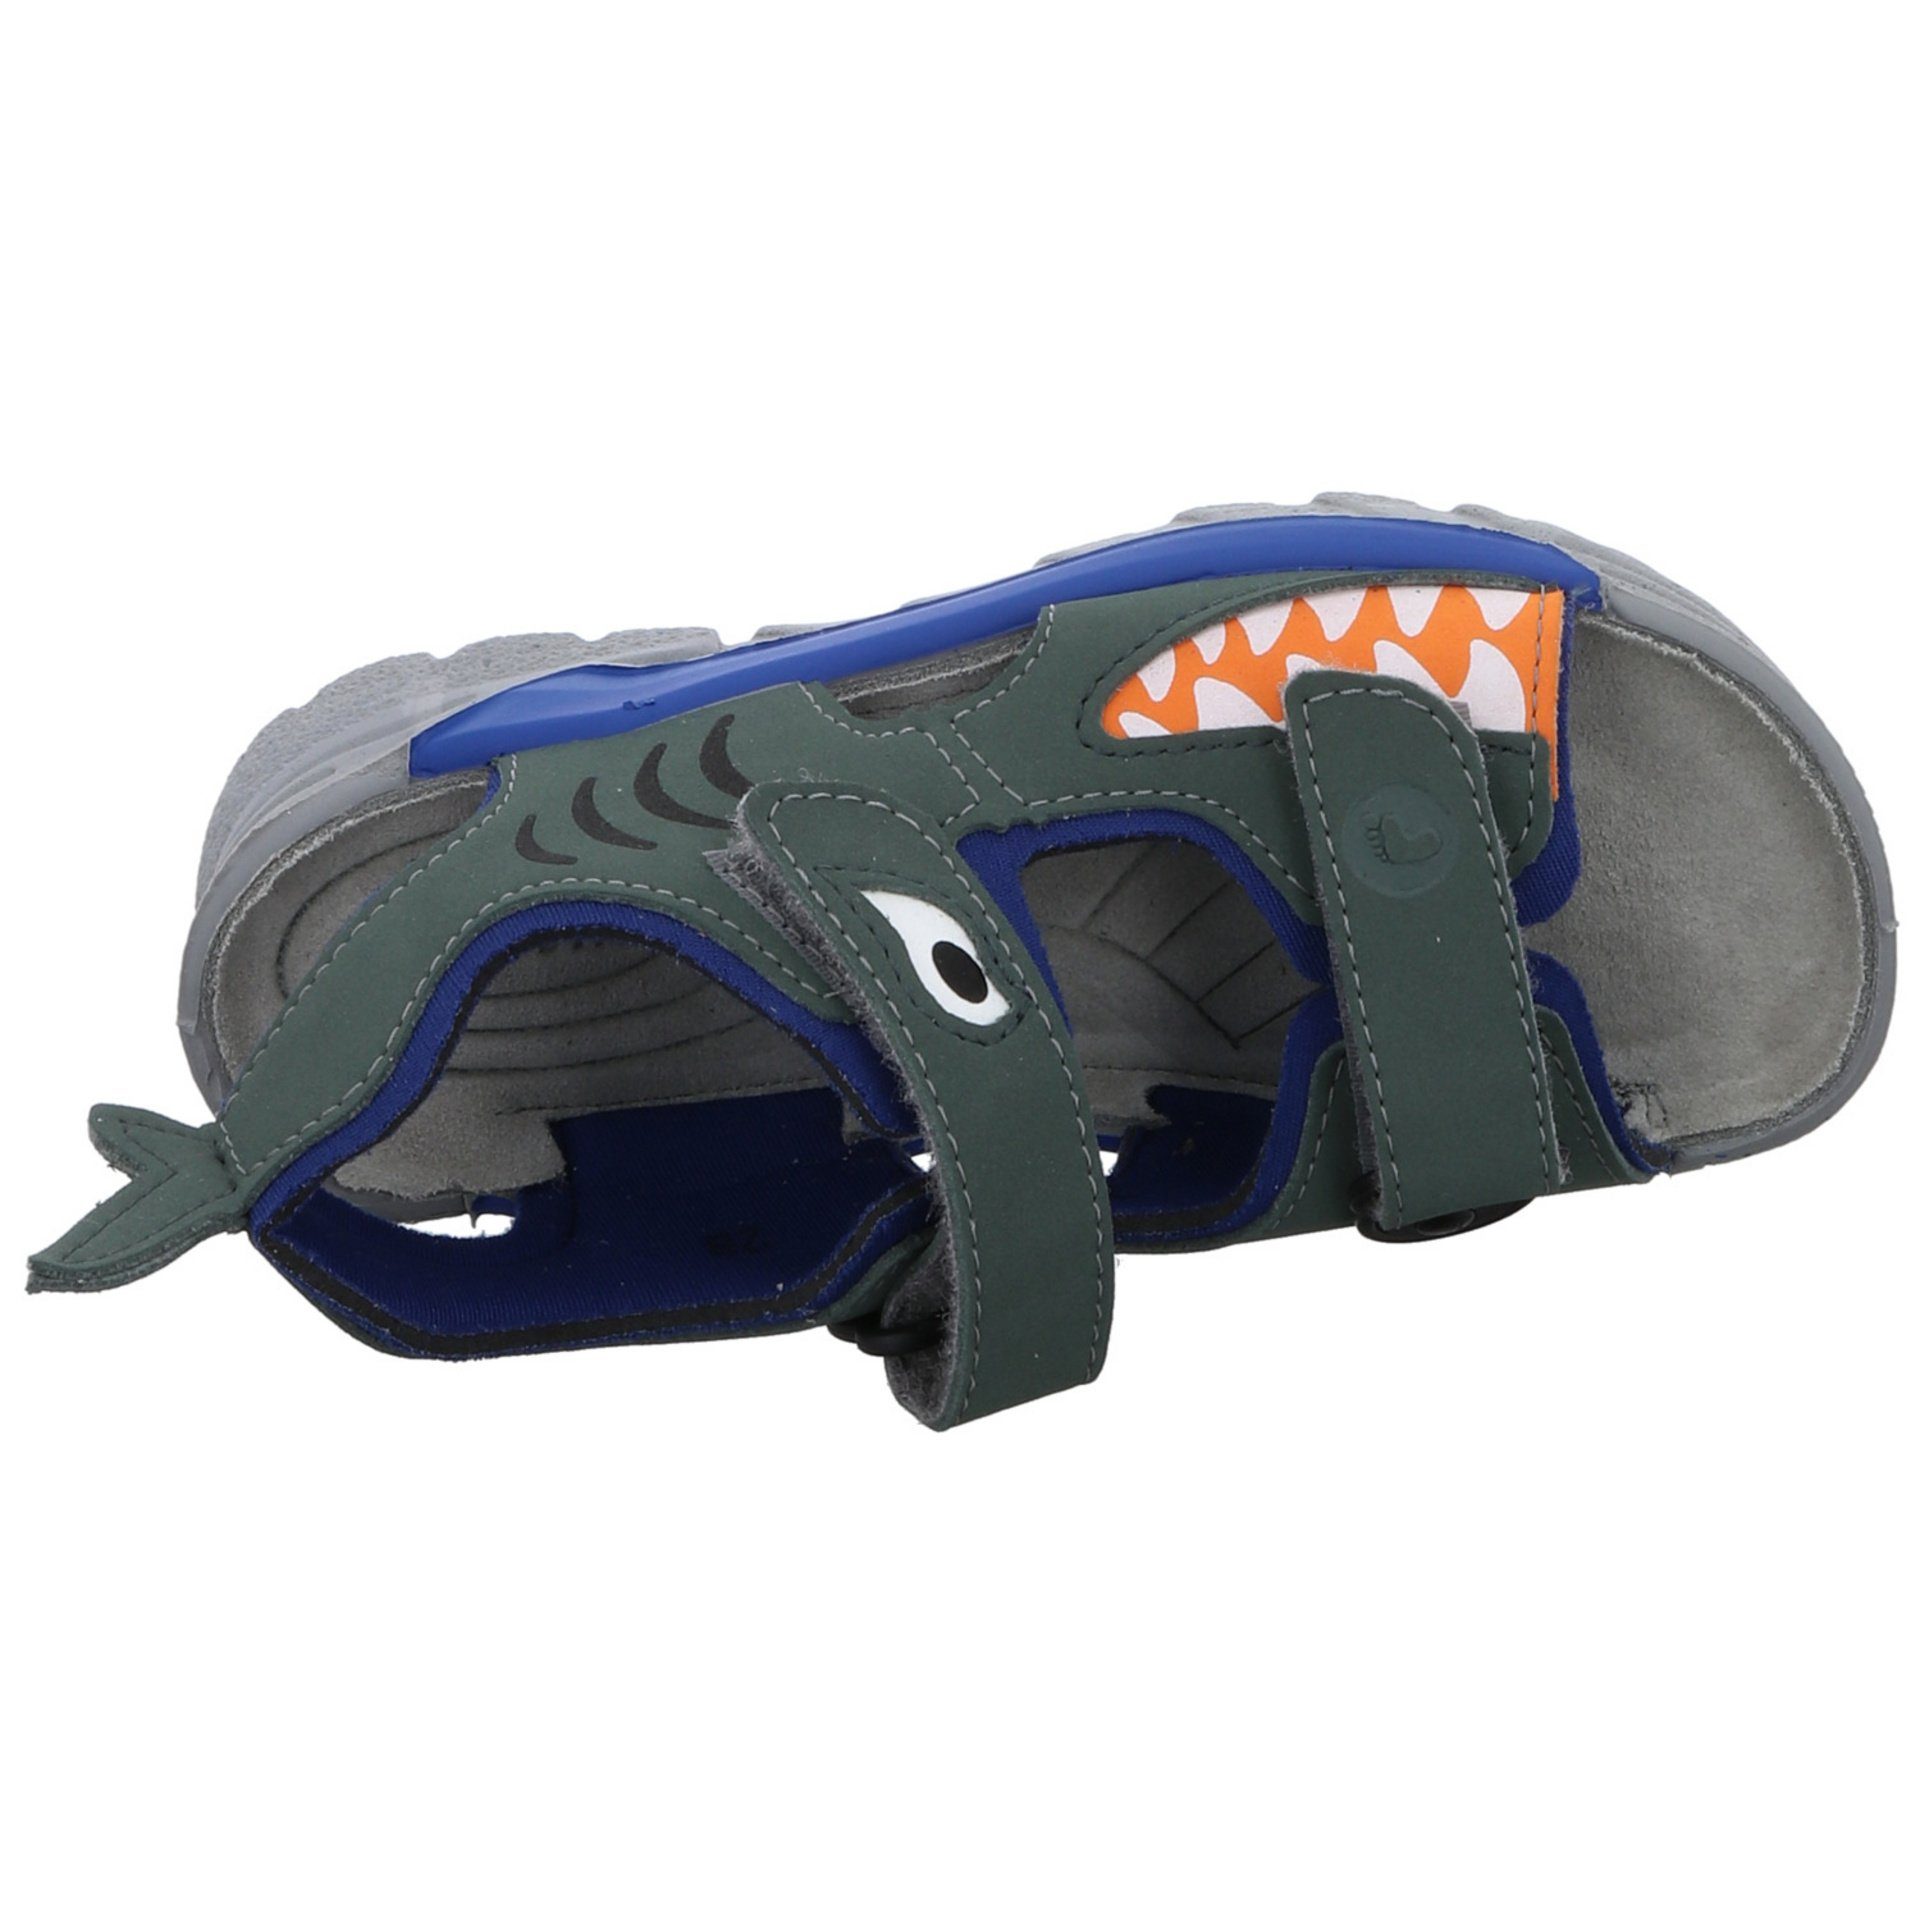 Ricosta grün Sandalen Textil Shark Kinderschuhe Sandale Schuhe Jungen Sandale